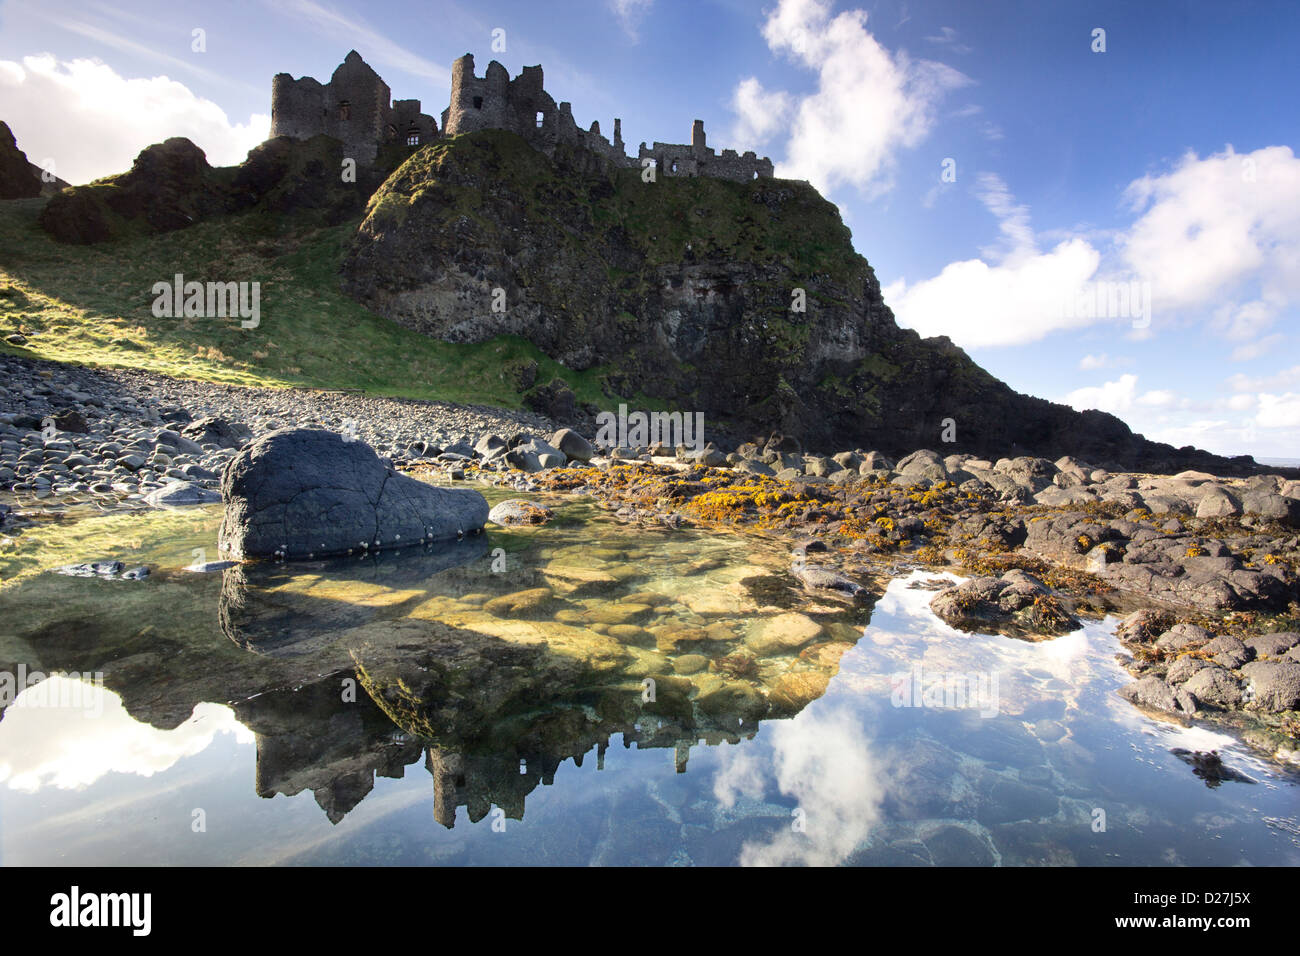 Le célèbre château de Dunluce - un monument de l'UNESCO de la Causeway Coast de l'Irlande du Nord - reflétée dans un bassin de marée. Banque D'Images